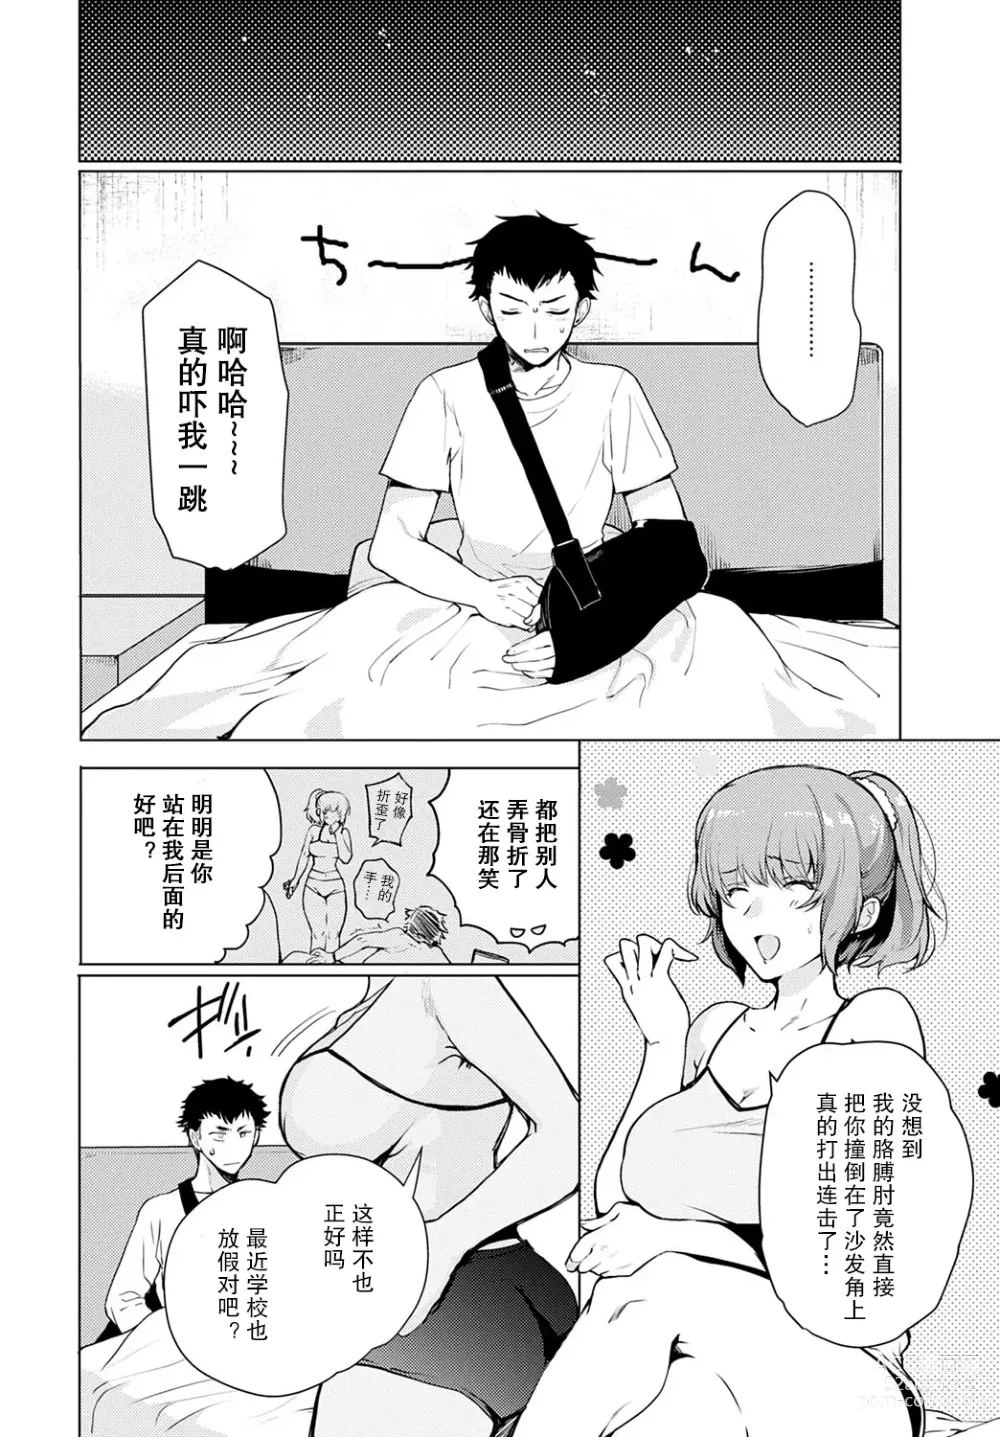 Page 4 of manga Kyoudai Switch Siblings Switch